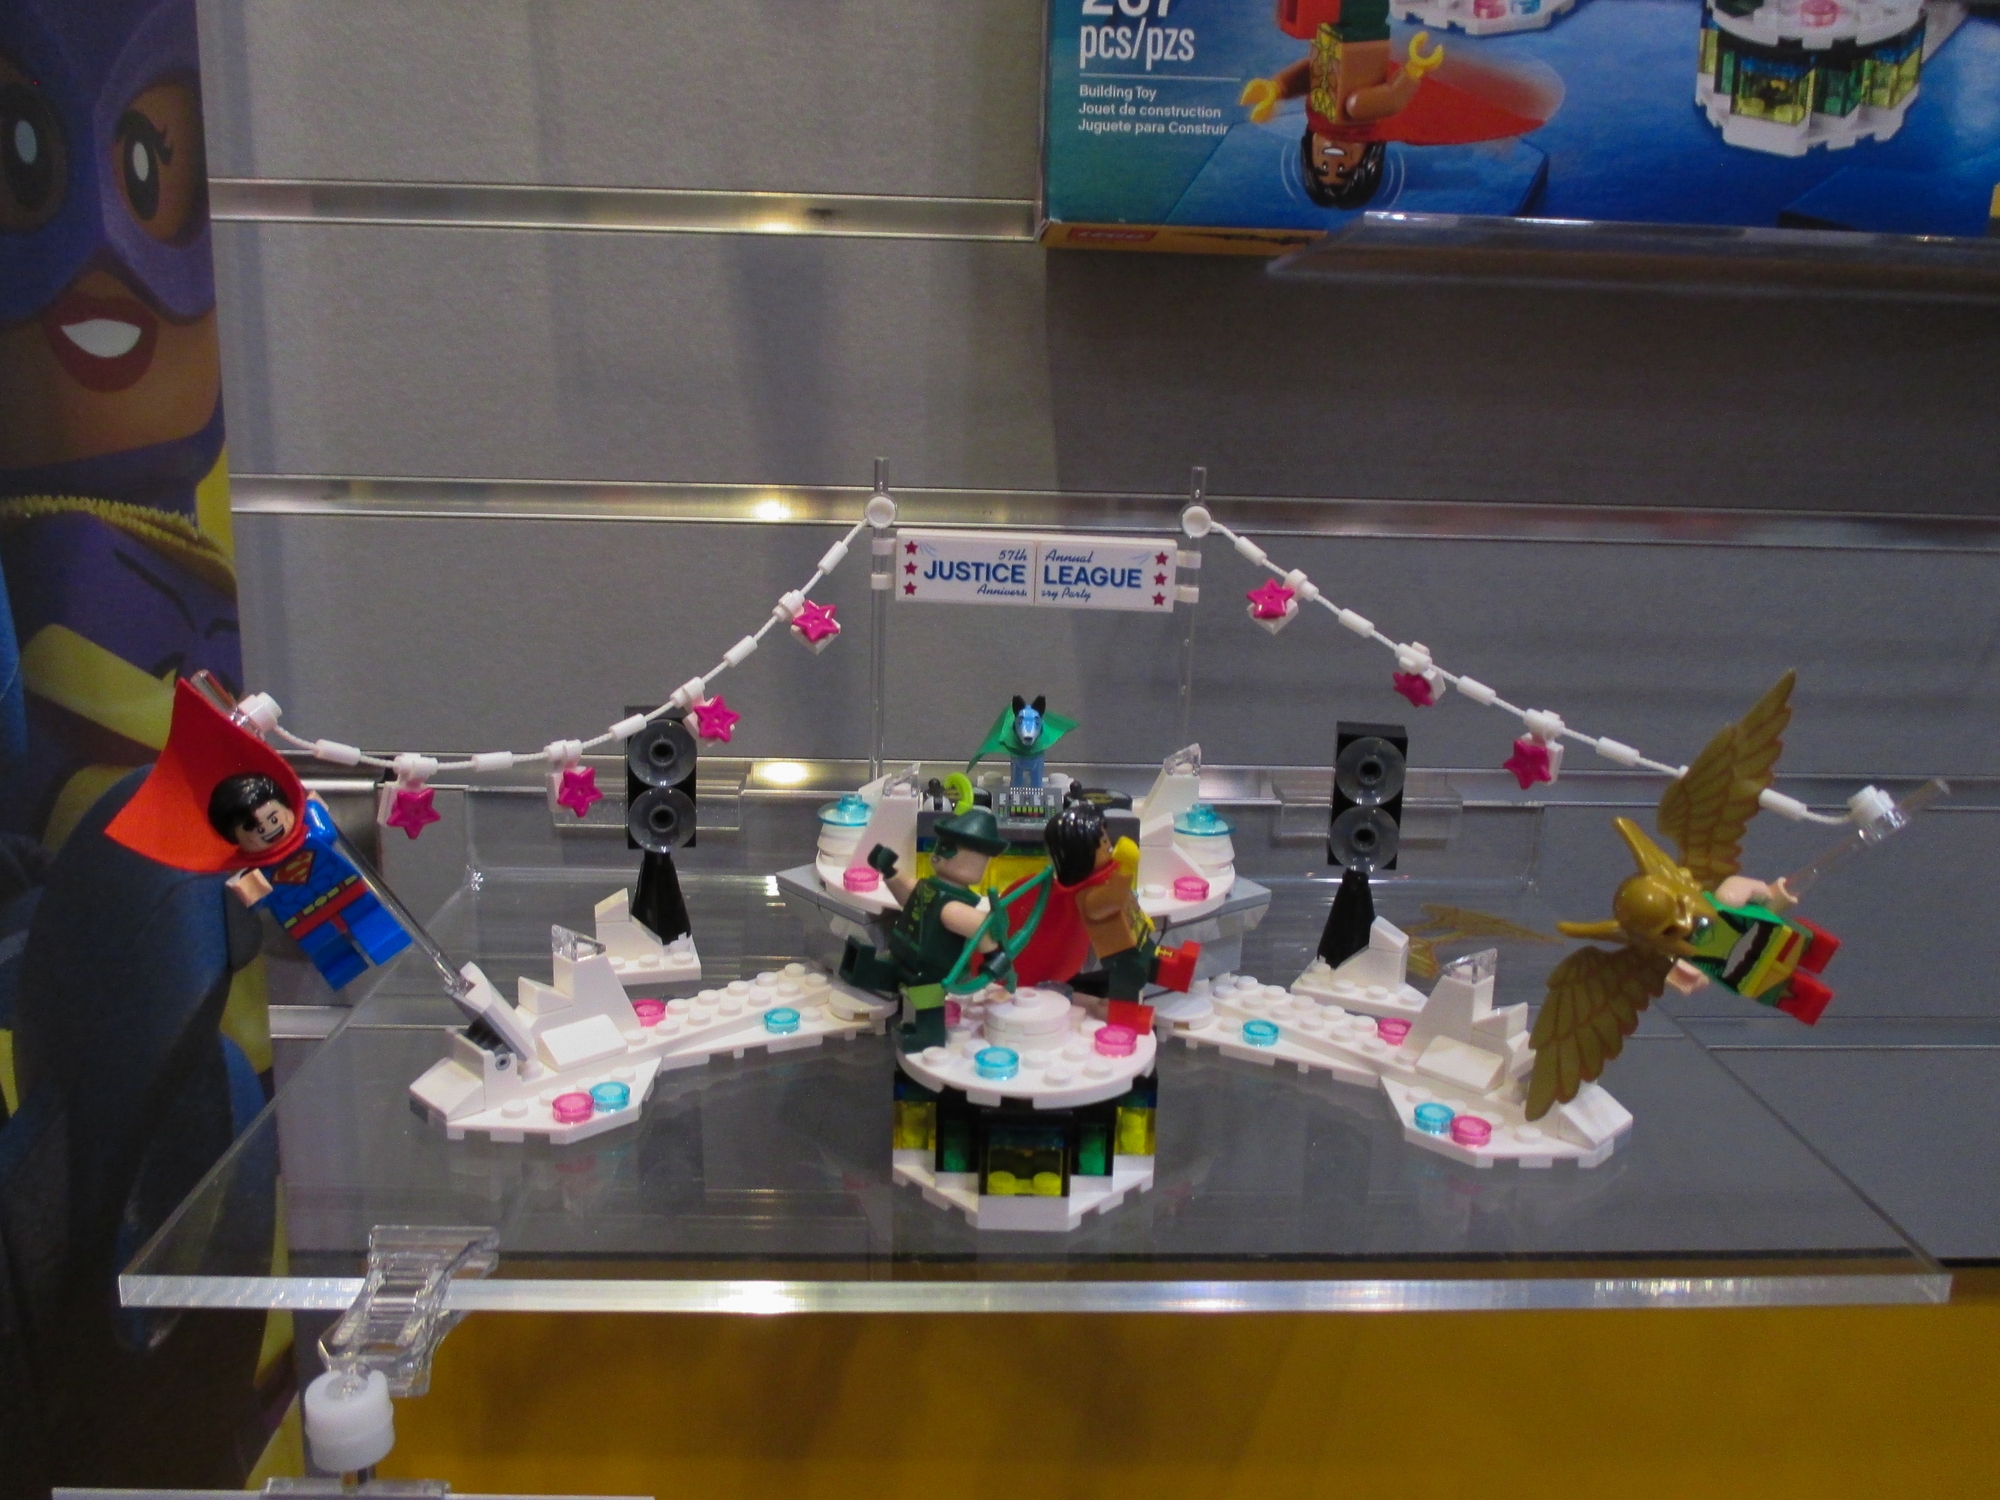 2018-International-Toy-Fair-LEGO-004.jpg